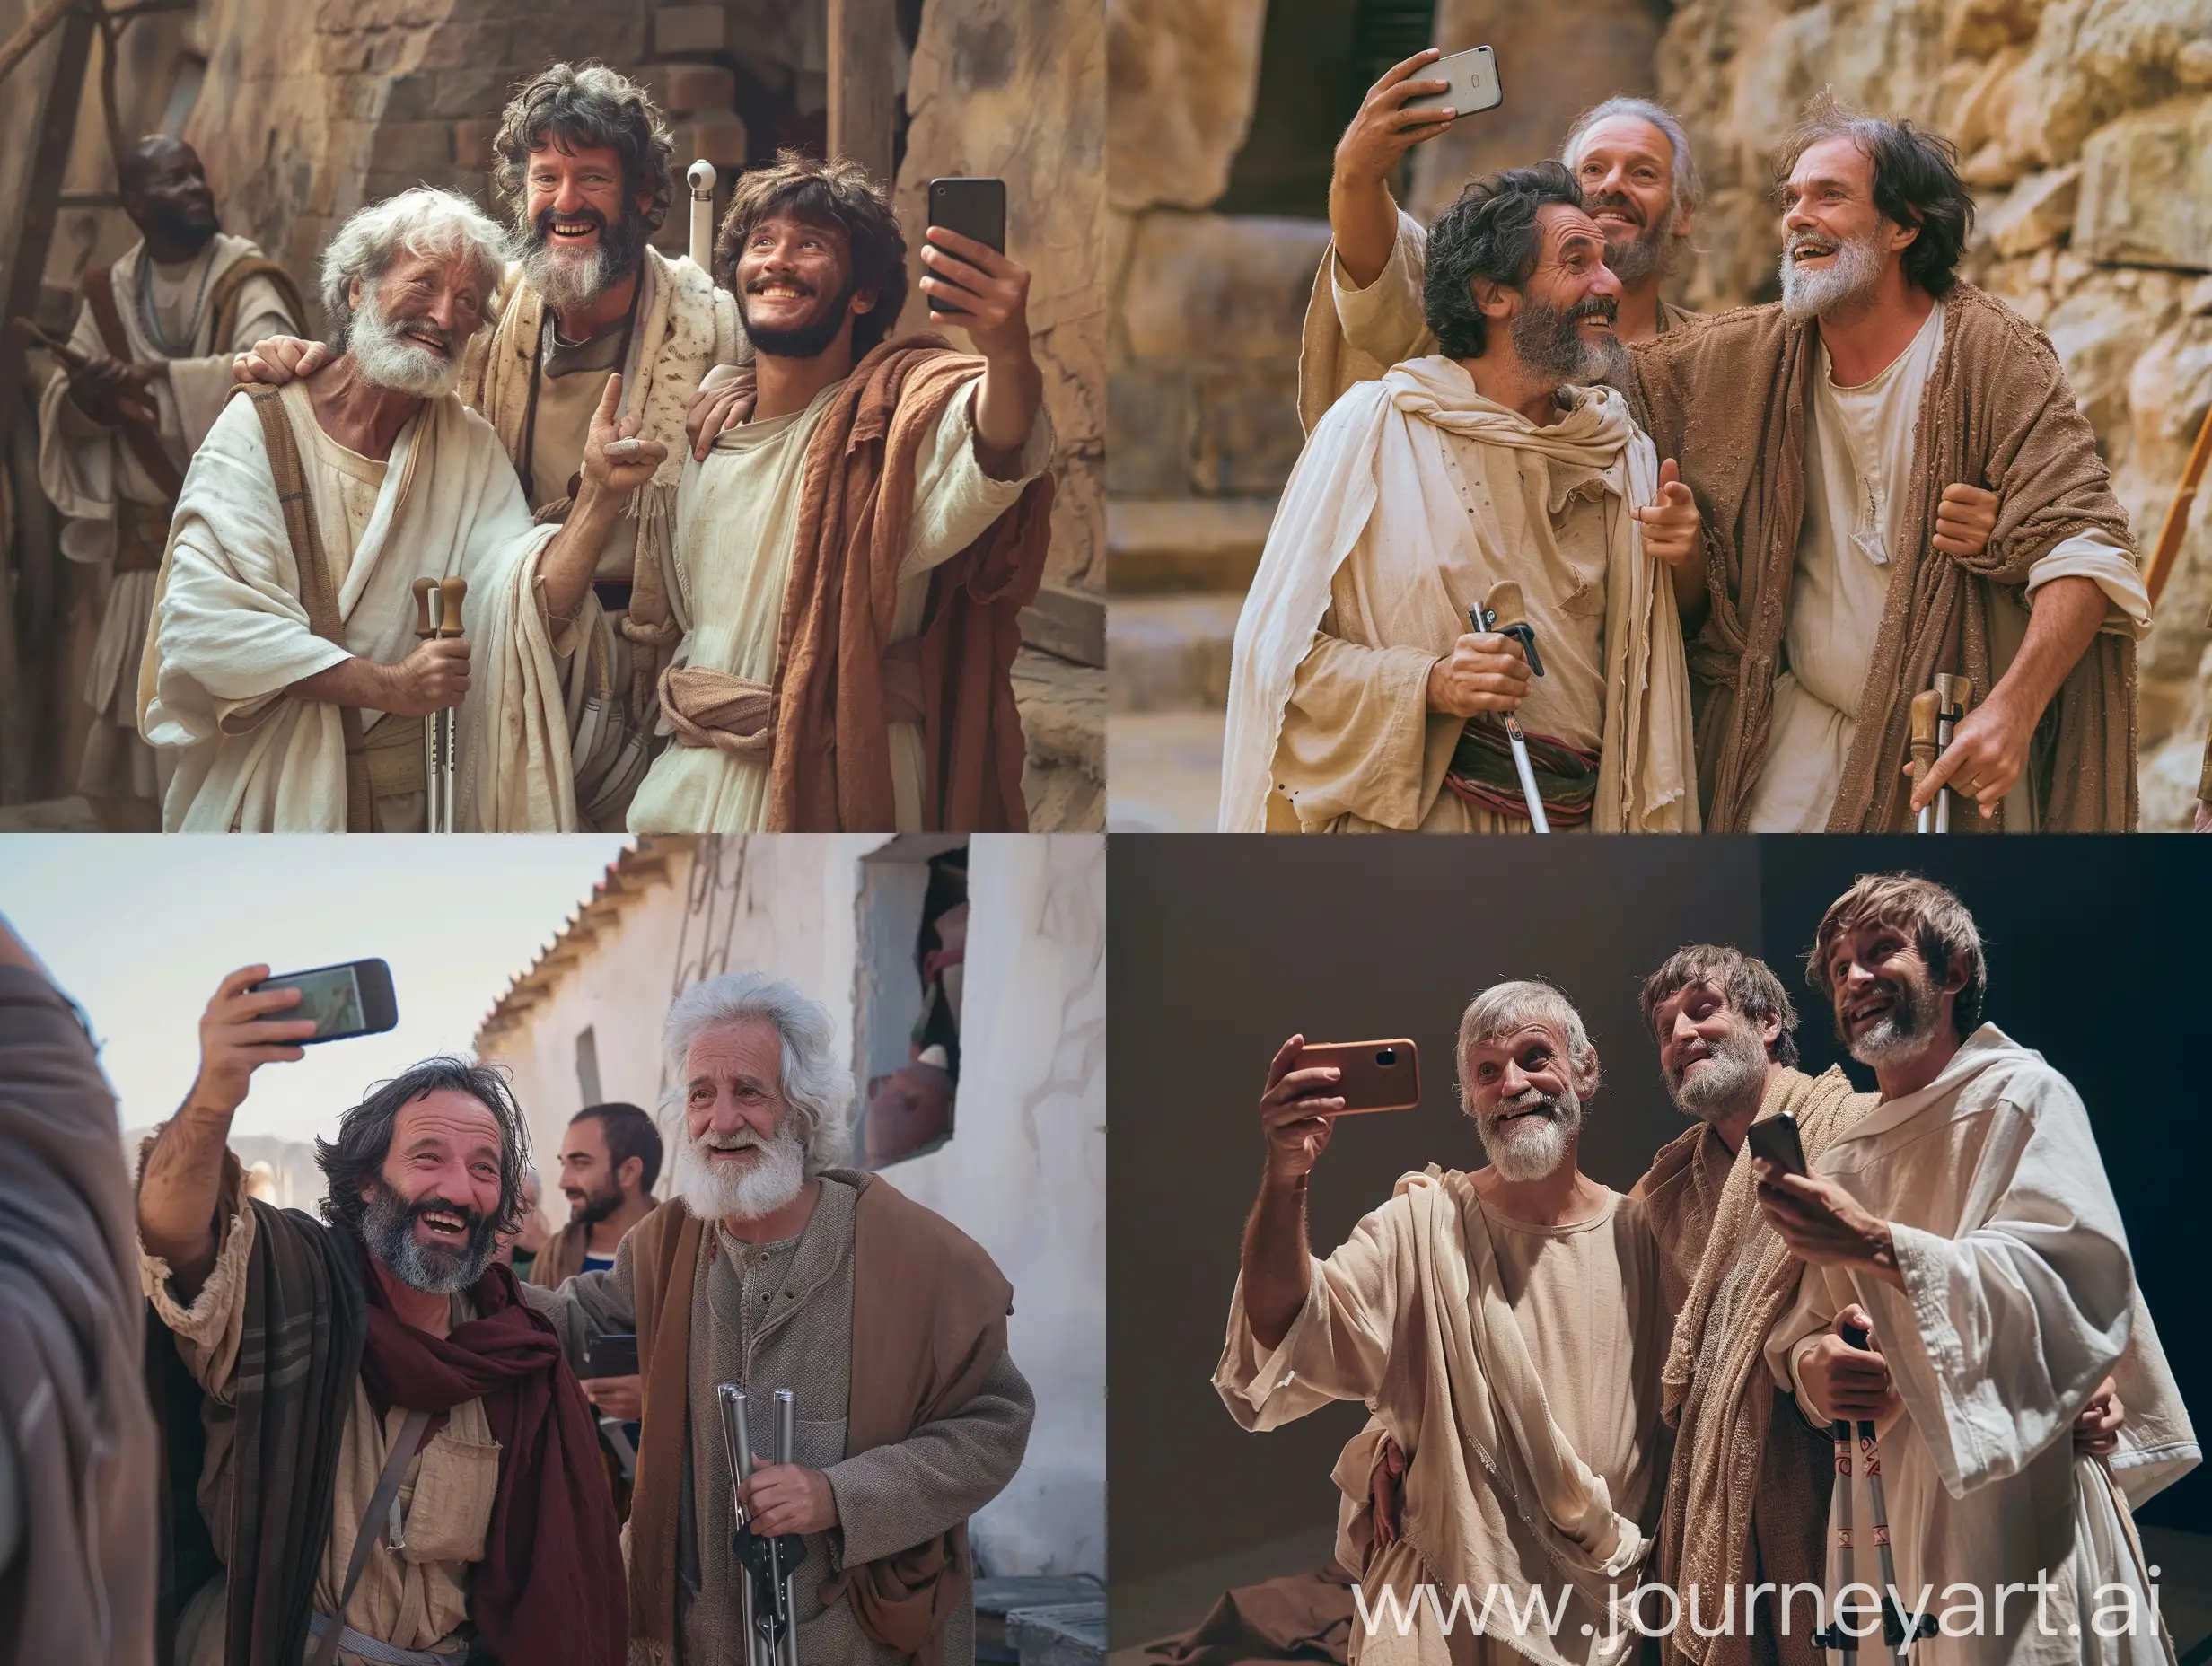 Joyful-Apostles-Capture-Healing-Moment-in-Selfie